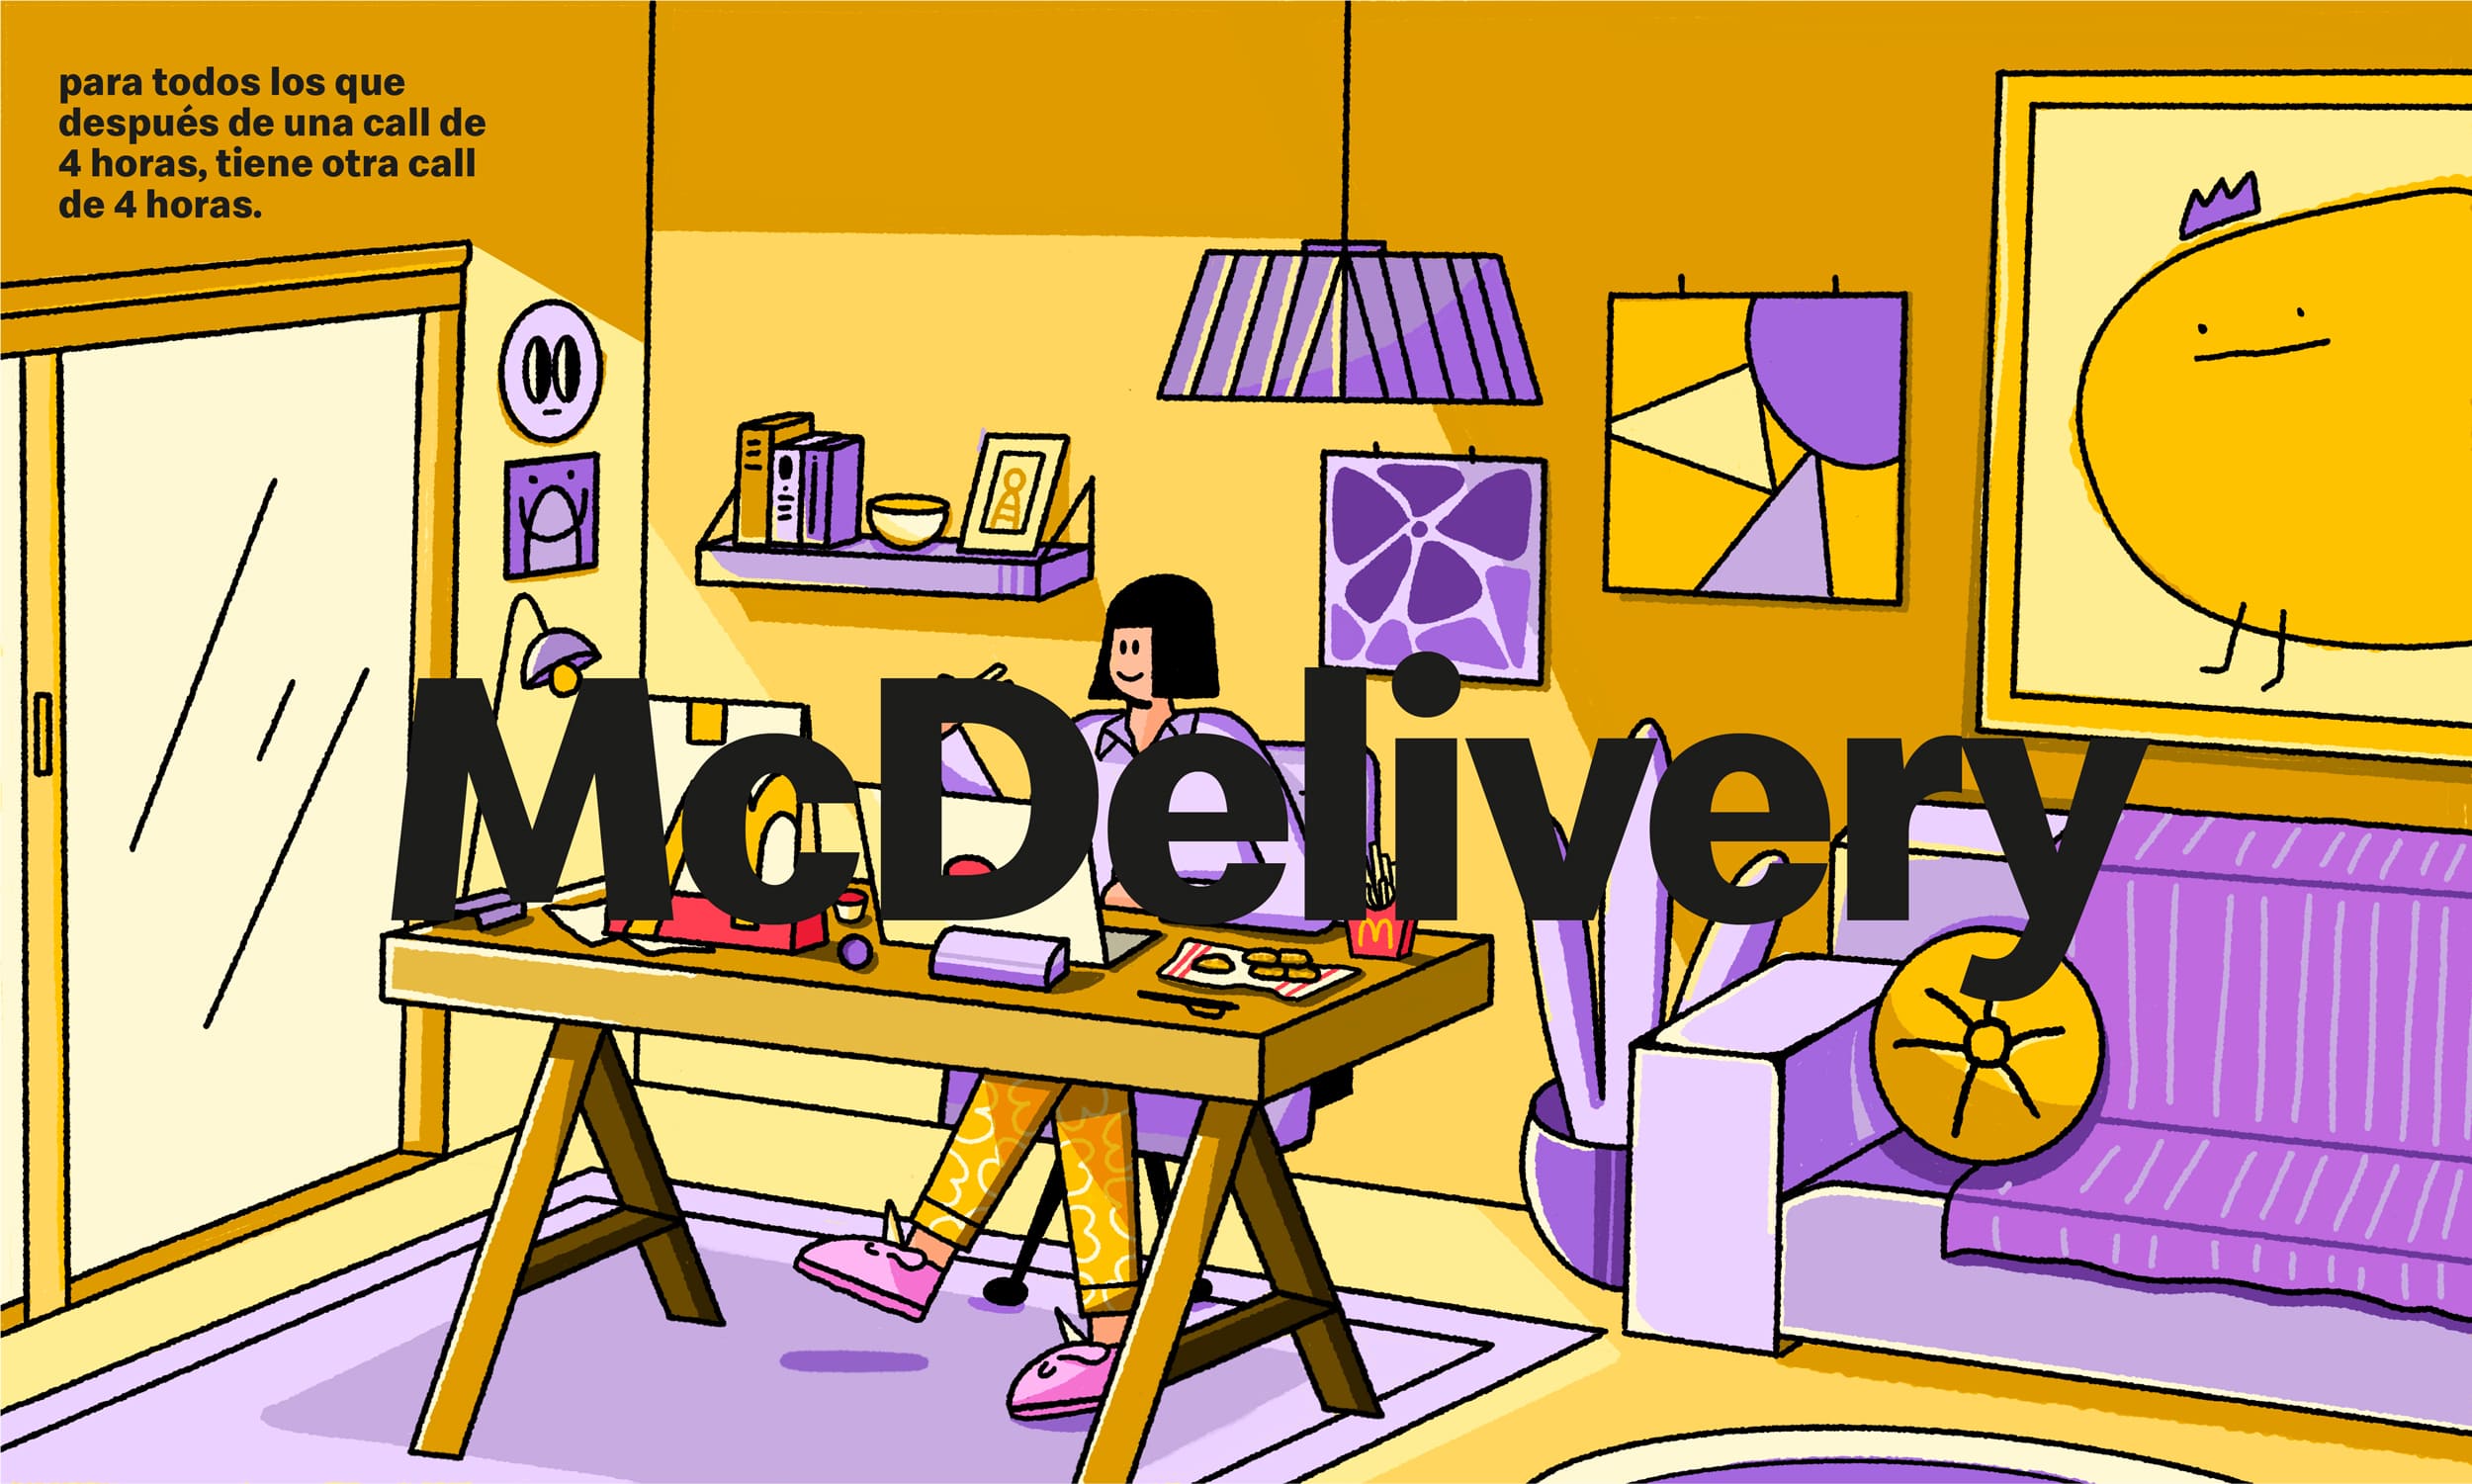 McDonald's - Home Office: Para todos los que después de una call de 4 horas, tienen otra call de 4 horas.